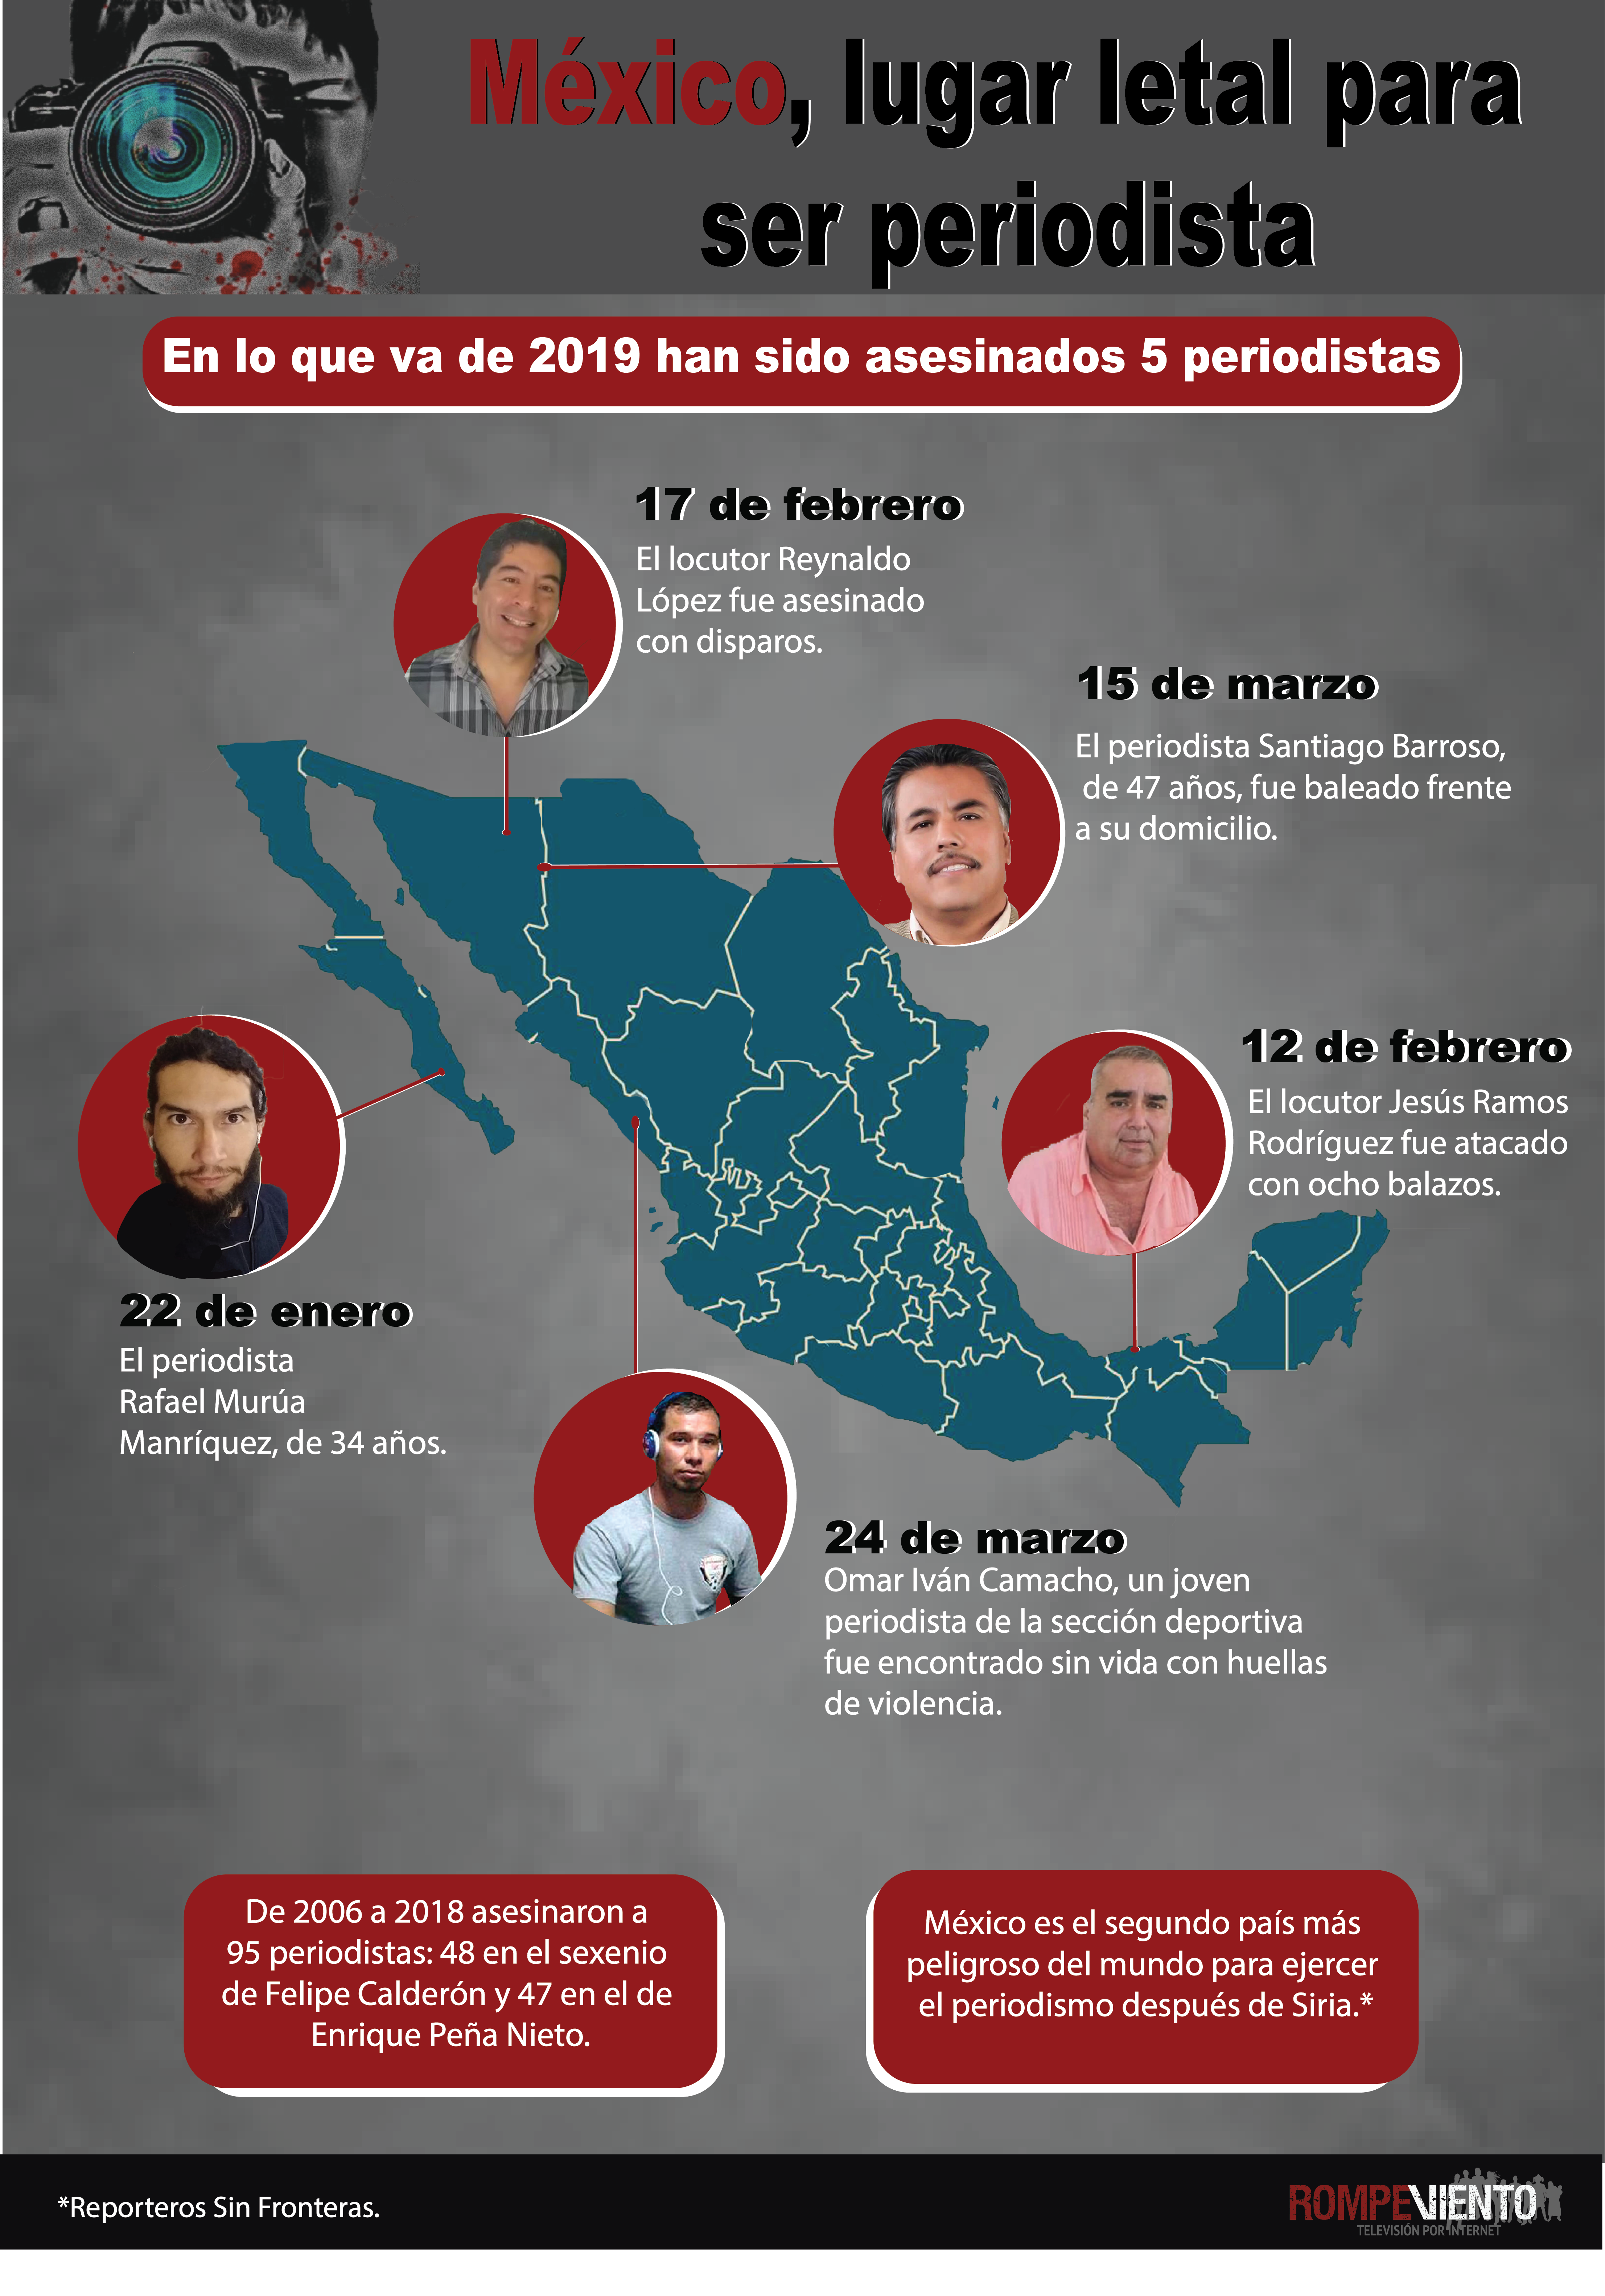 México, lugar letal para ser periodista